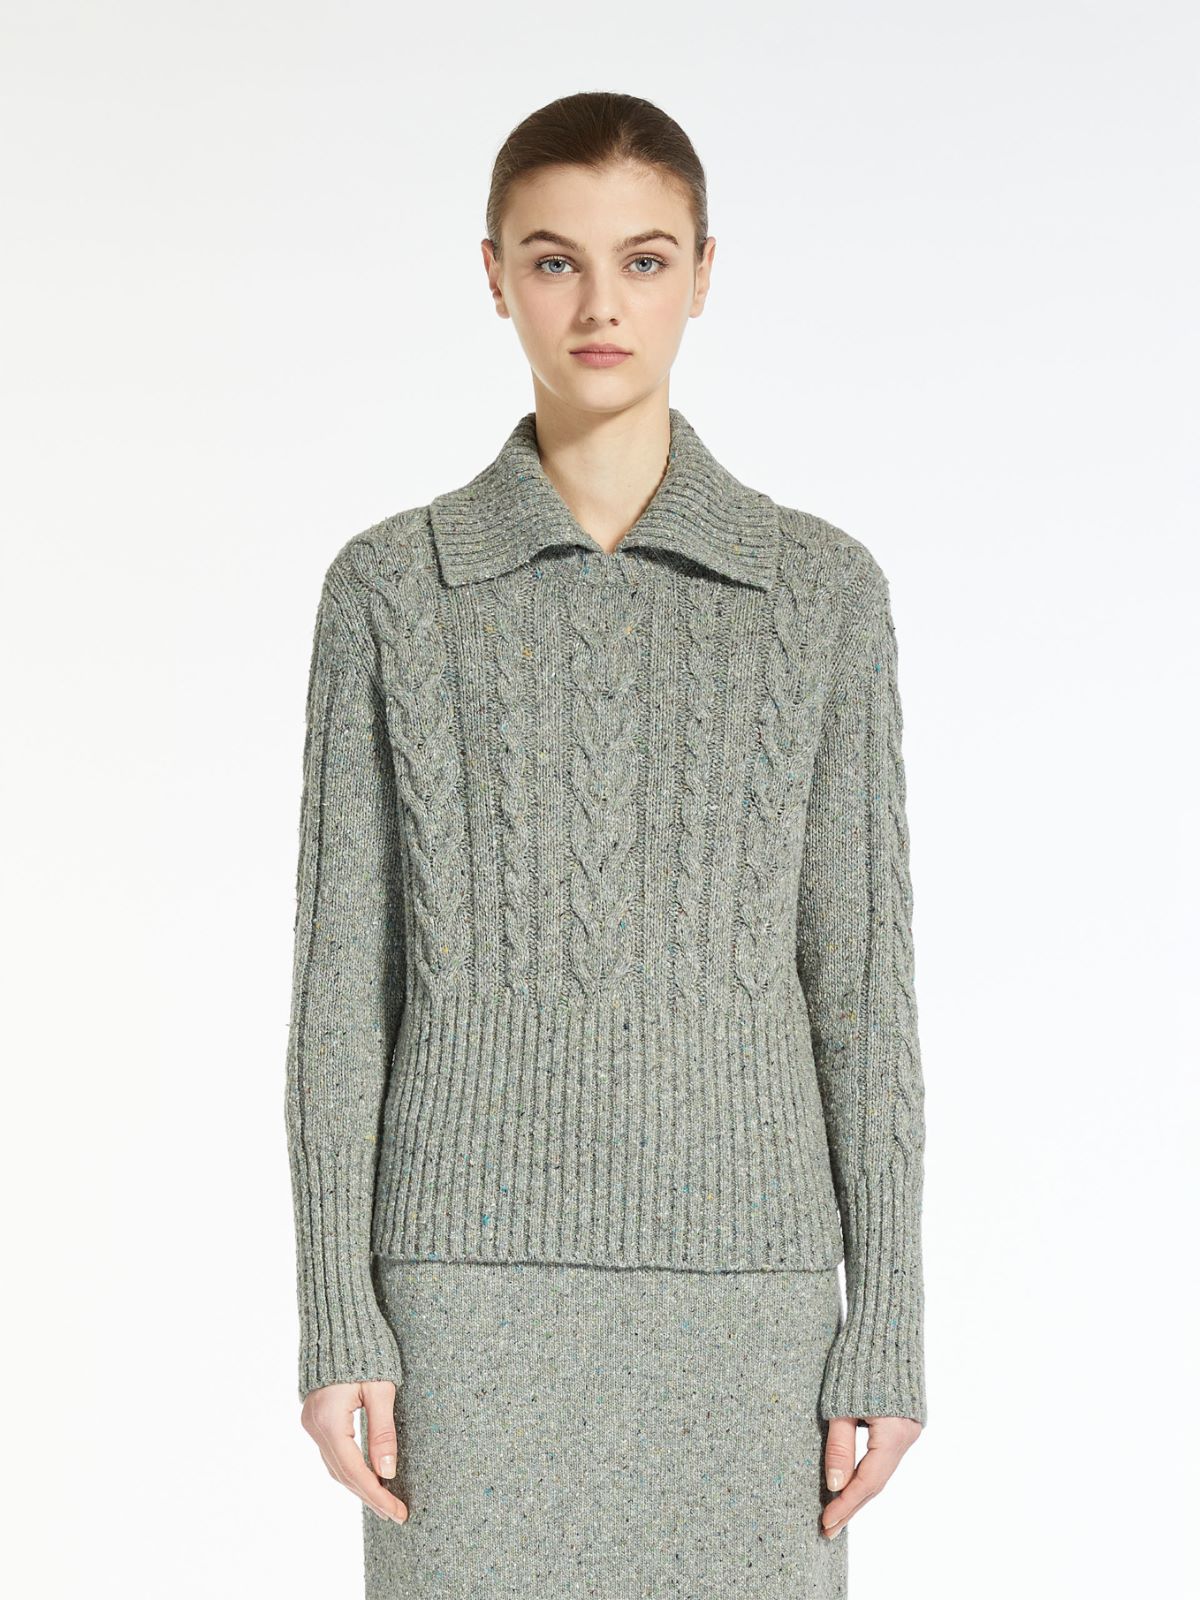 Tweed yarn sweater - MEDIUM GREY - Weekend Max Mara - 2